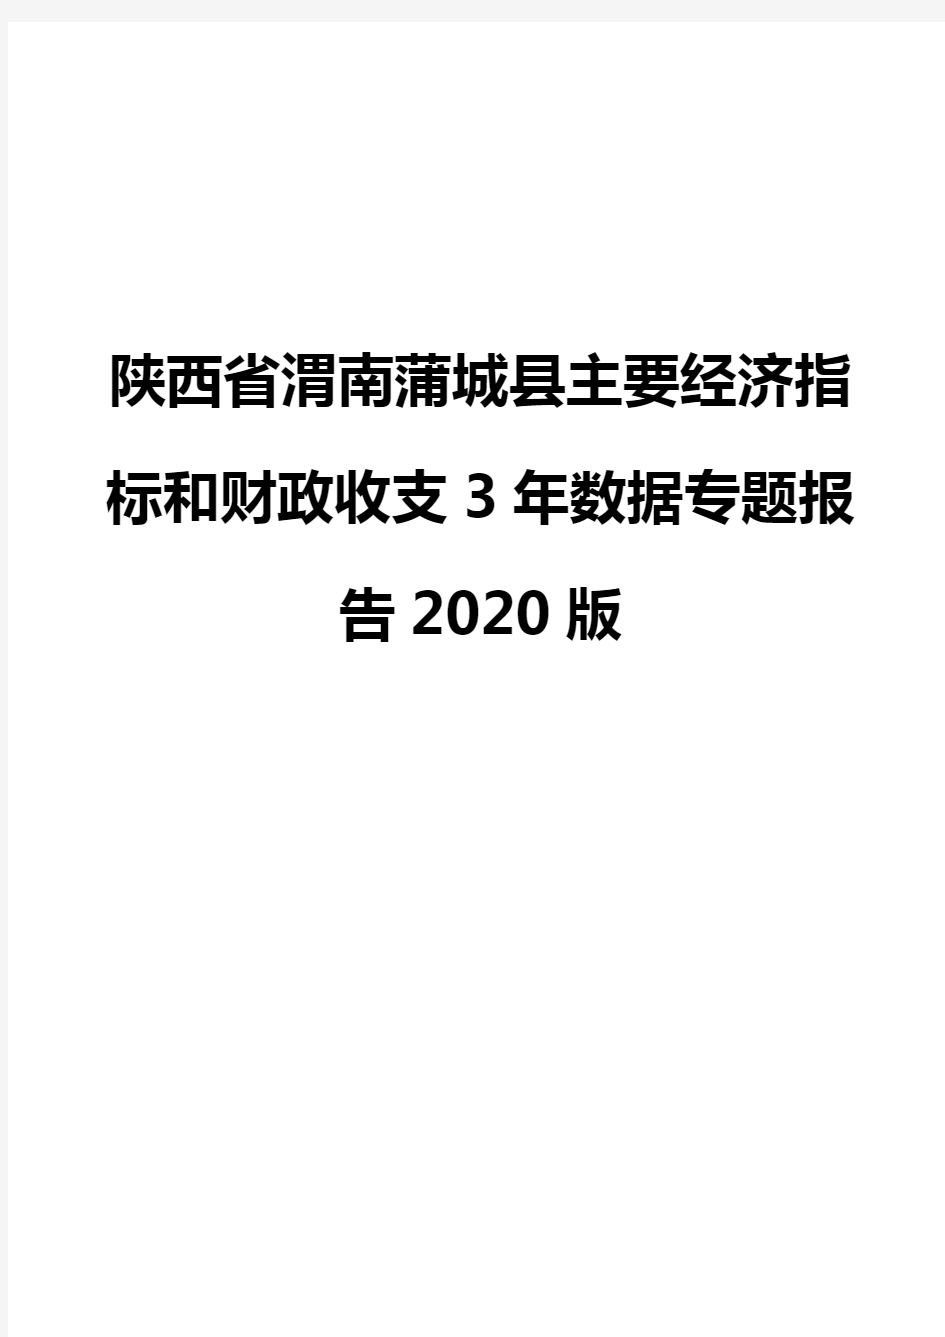 陕西省渭南蒲城县主要经济指标和财政收支3年数据专题报告2020版